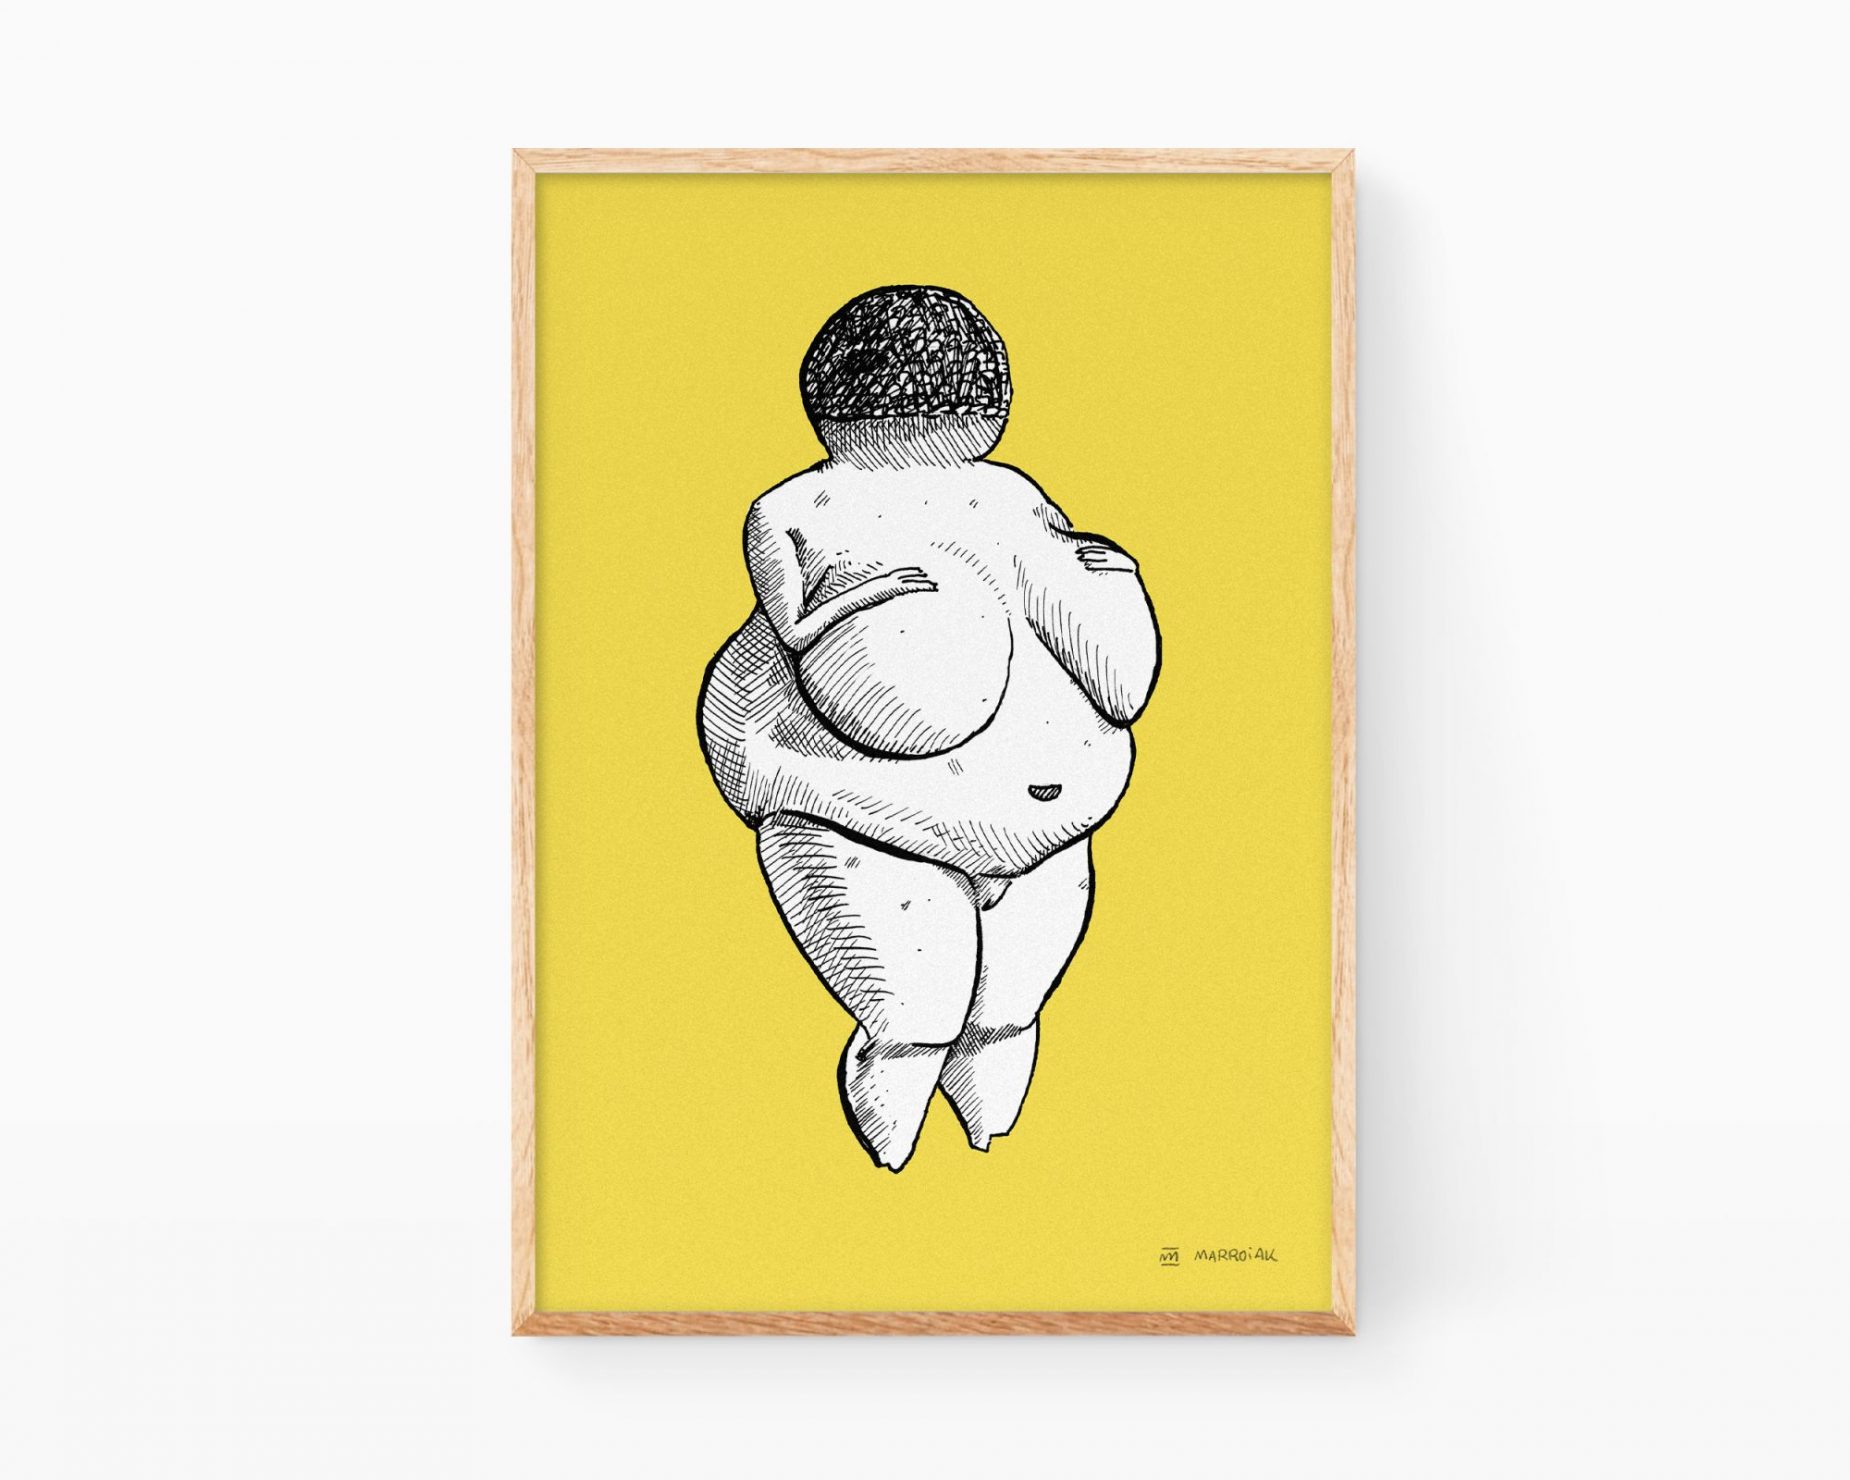 Lámina Venus de Willendorf amarillo. Cuadro decorativo para enmarcar con un dibujo en blanco y negro de la escultura primitiva de una mujer embarzada. Ilustración original y exclusiva en formato print disponible para comprar online.